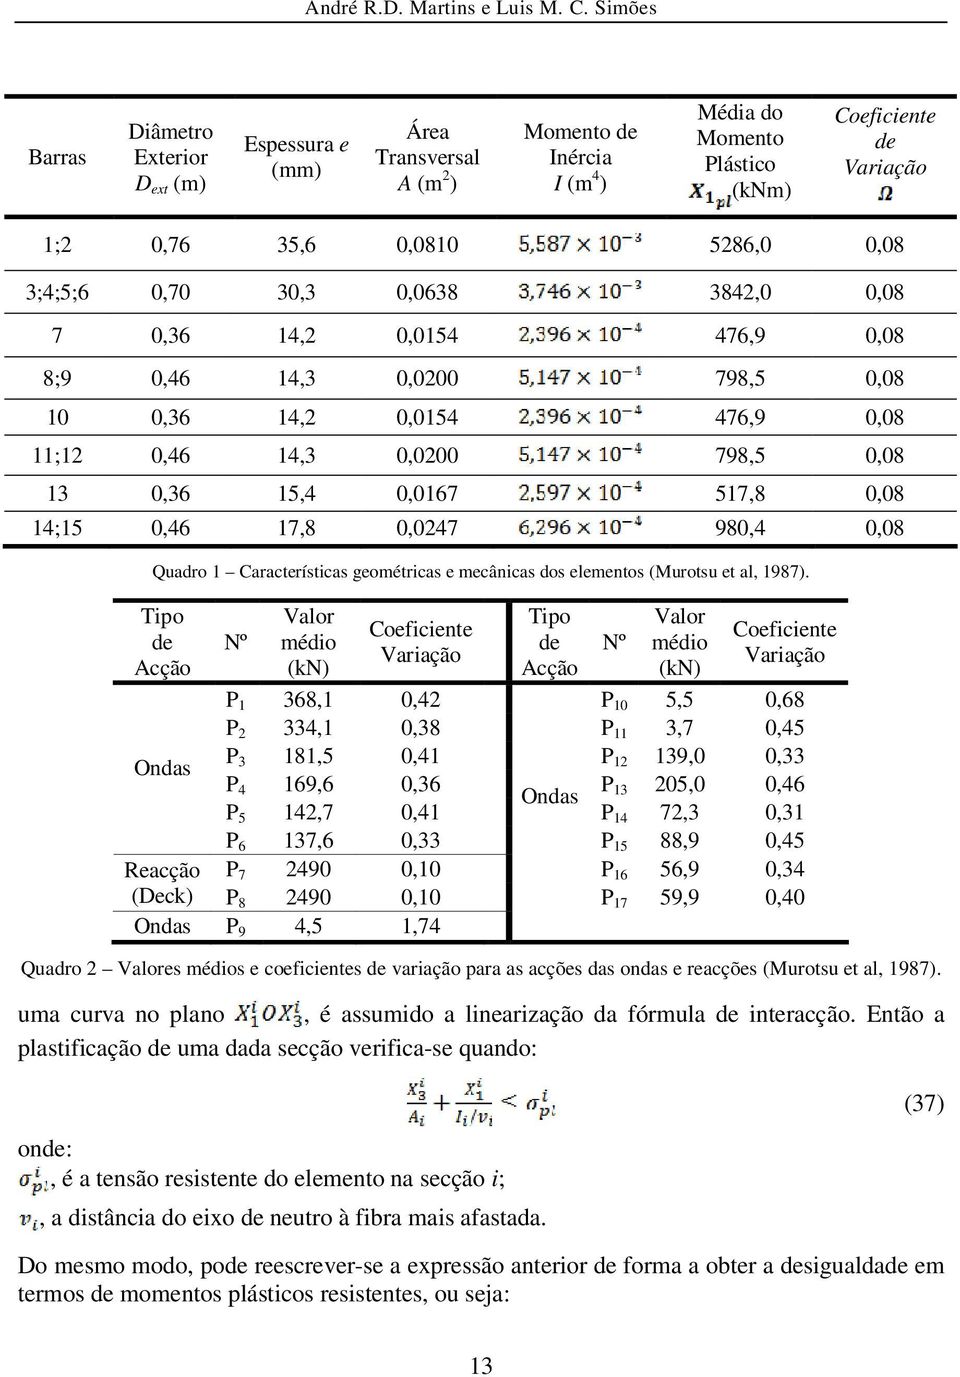 14;15 0,46 17,8 0,0247 980,4 0,08 Quadro 1 Características geométricas e mecânicas dos elementos (Murotsu et al, 1987).